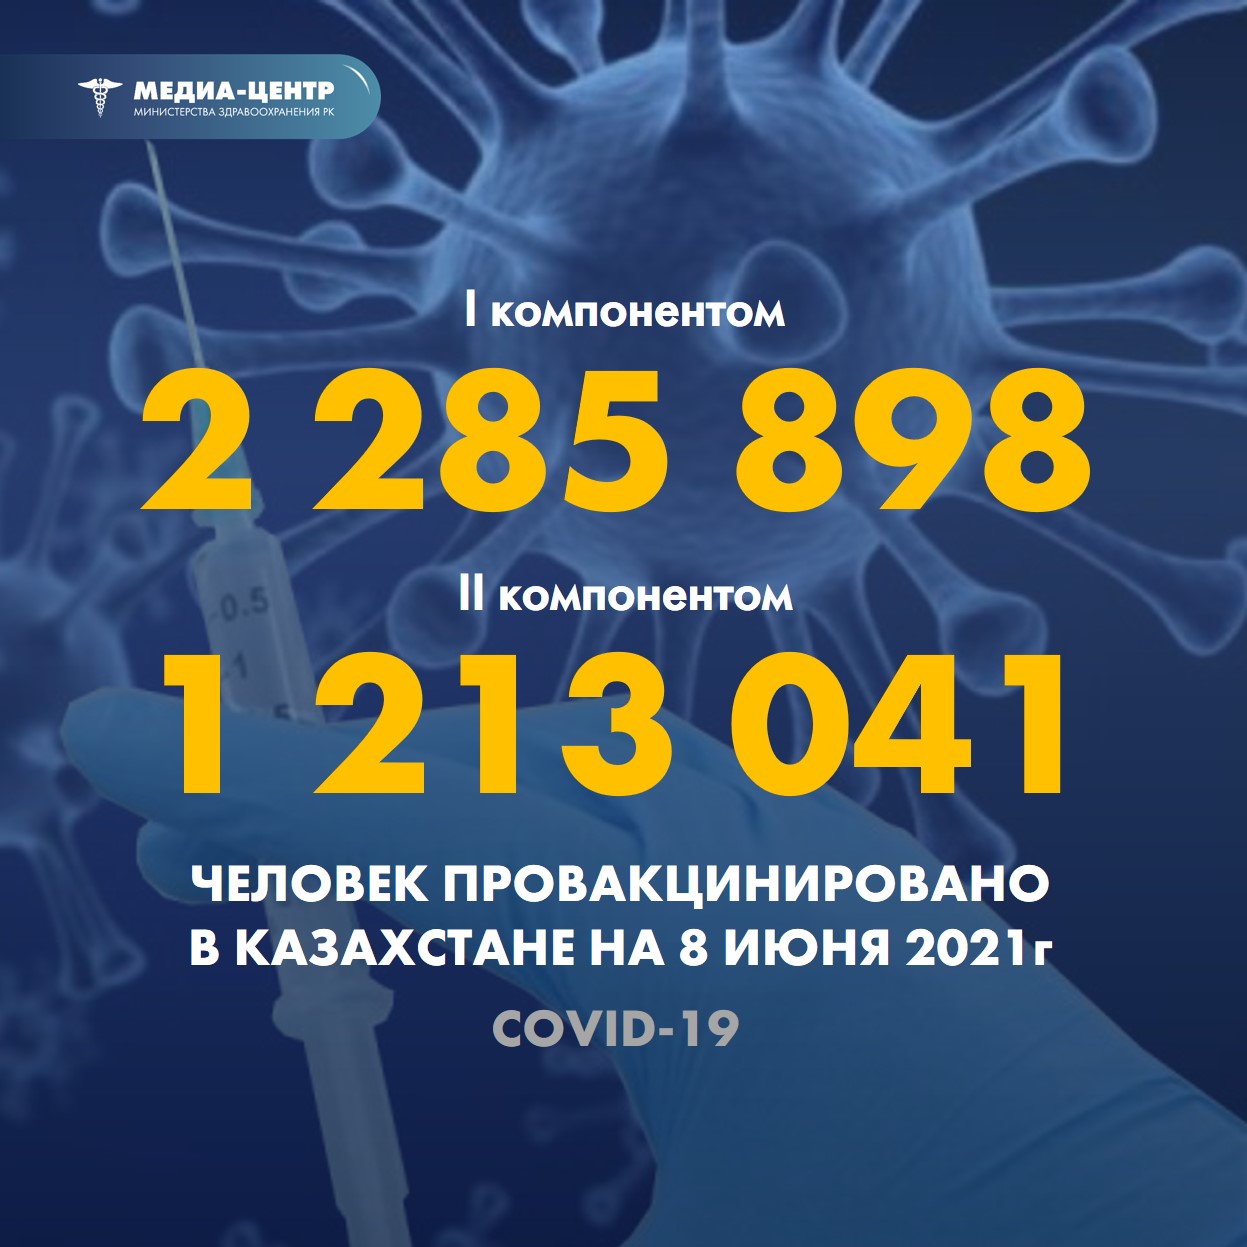 Информация о проведении вакцинации населения против КВИ на 08.06.2021 г. в разрезе регионов